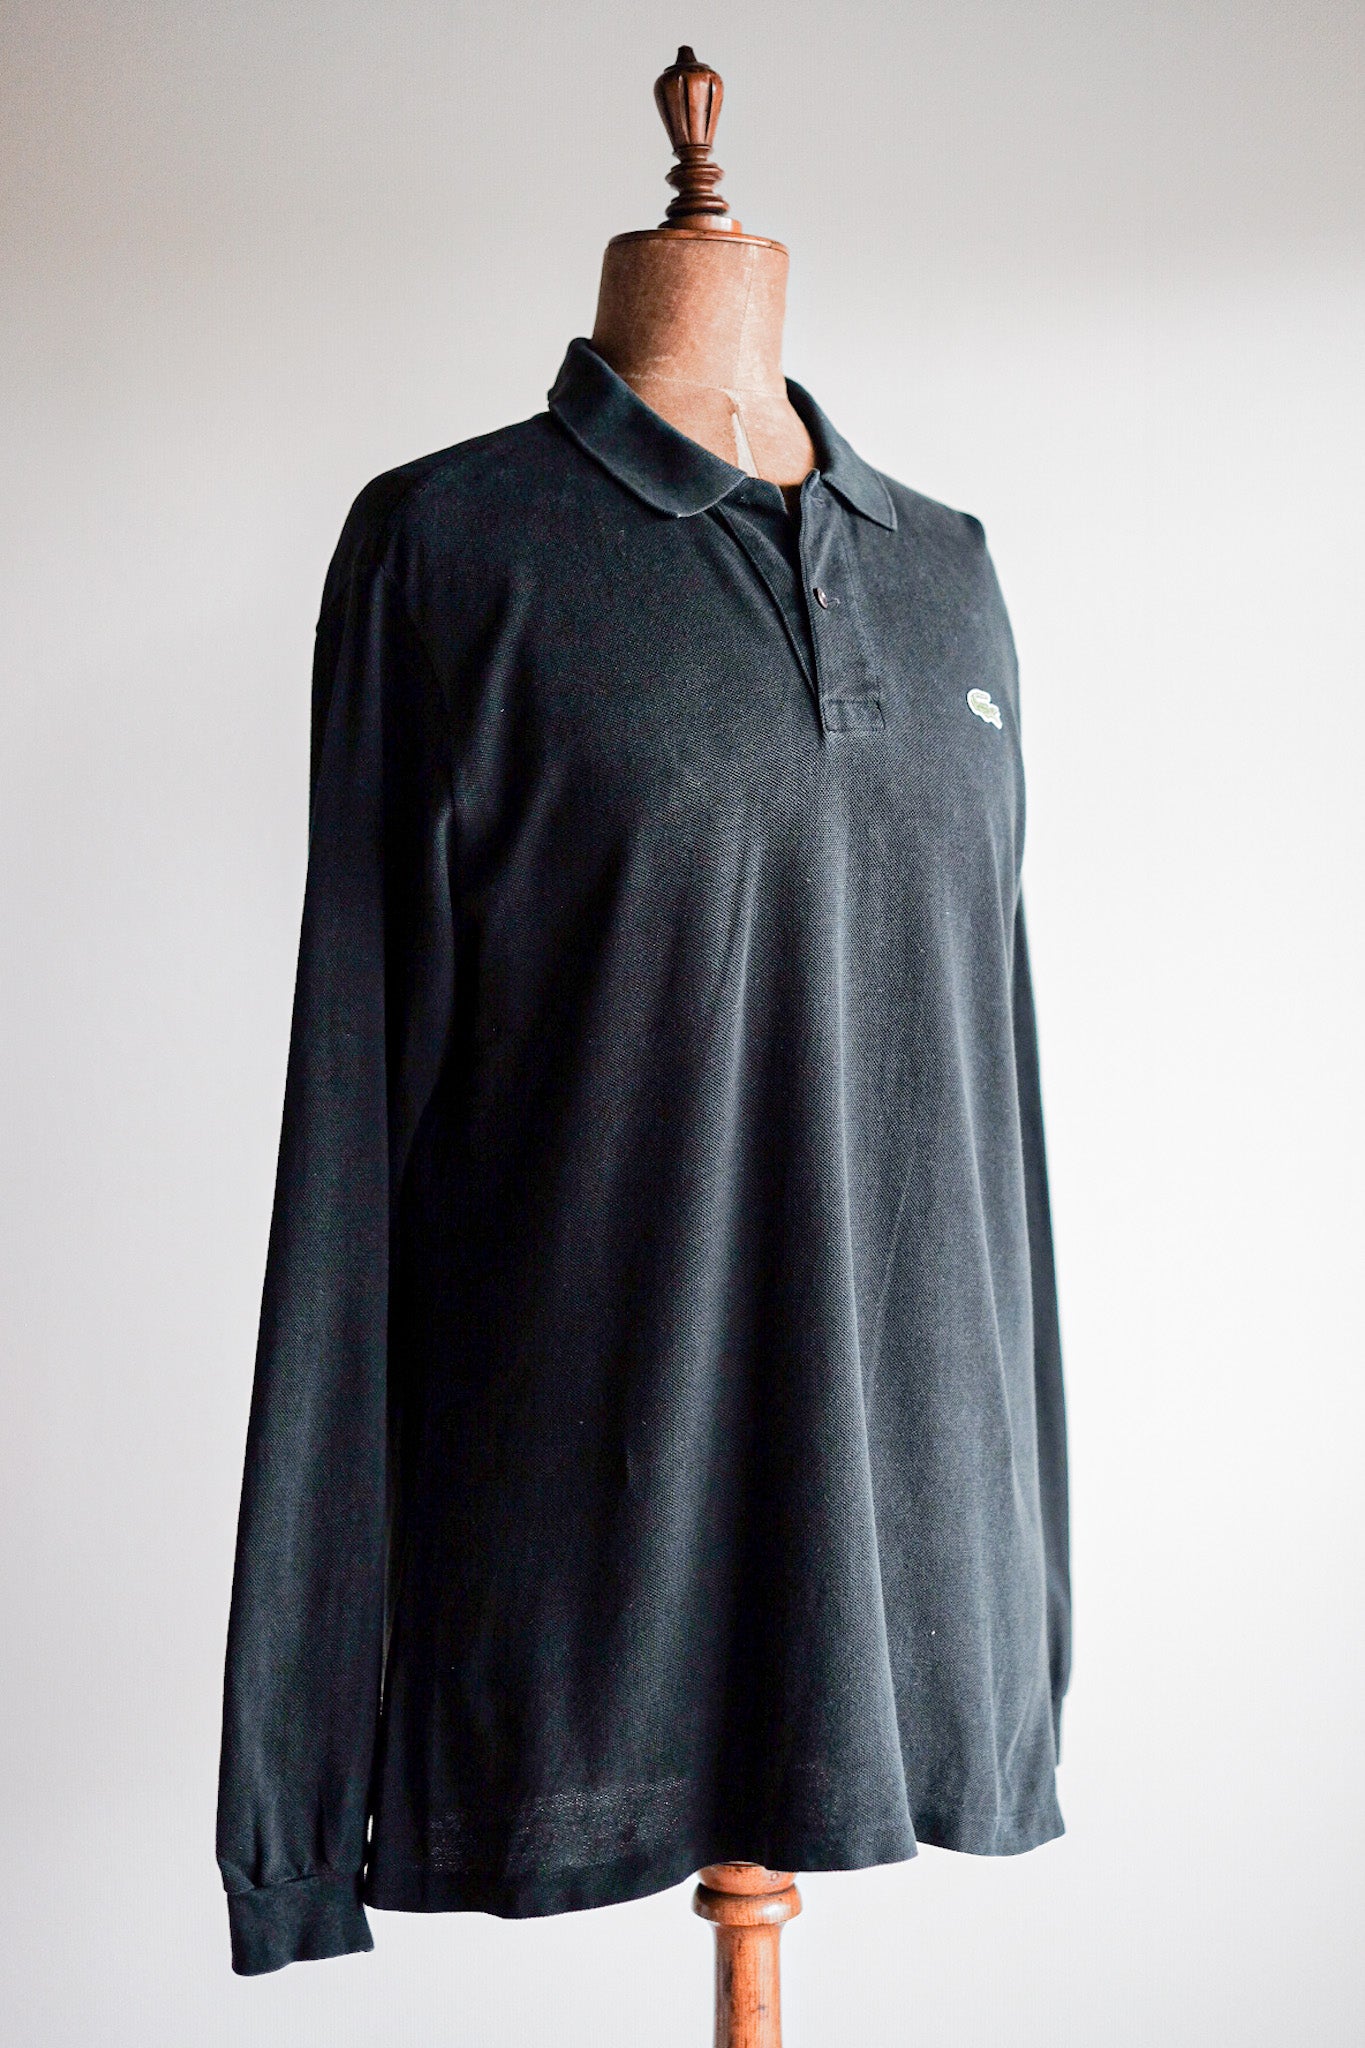 [~ 80's] Chemise Lacoste L/S Polo Shirt Size.5 "Black"